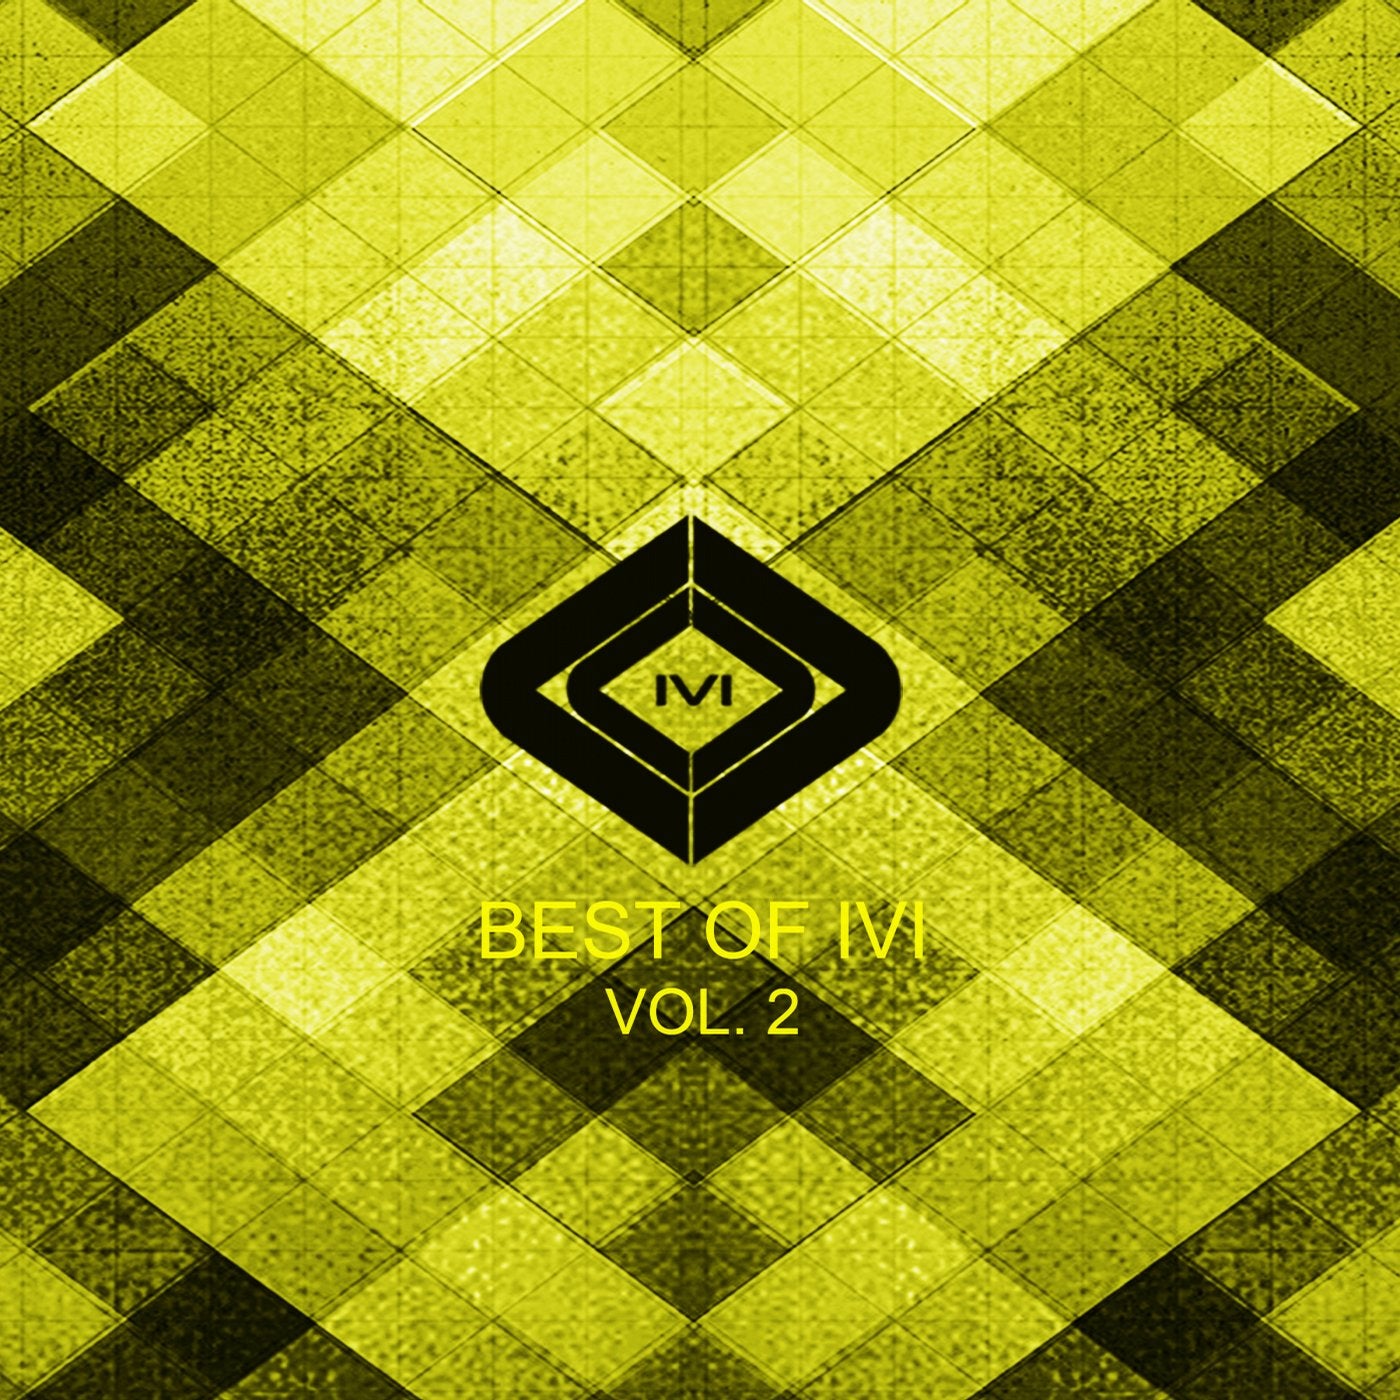 Best Of IVI Vol. 2